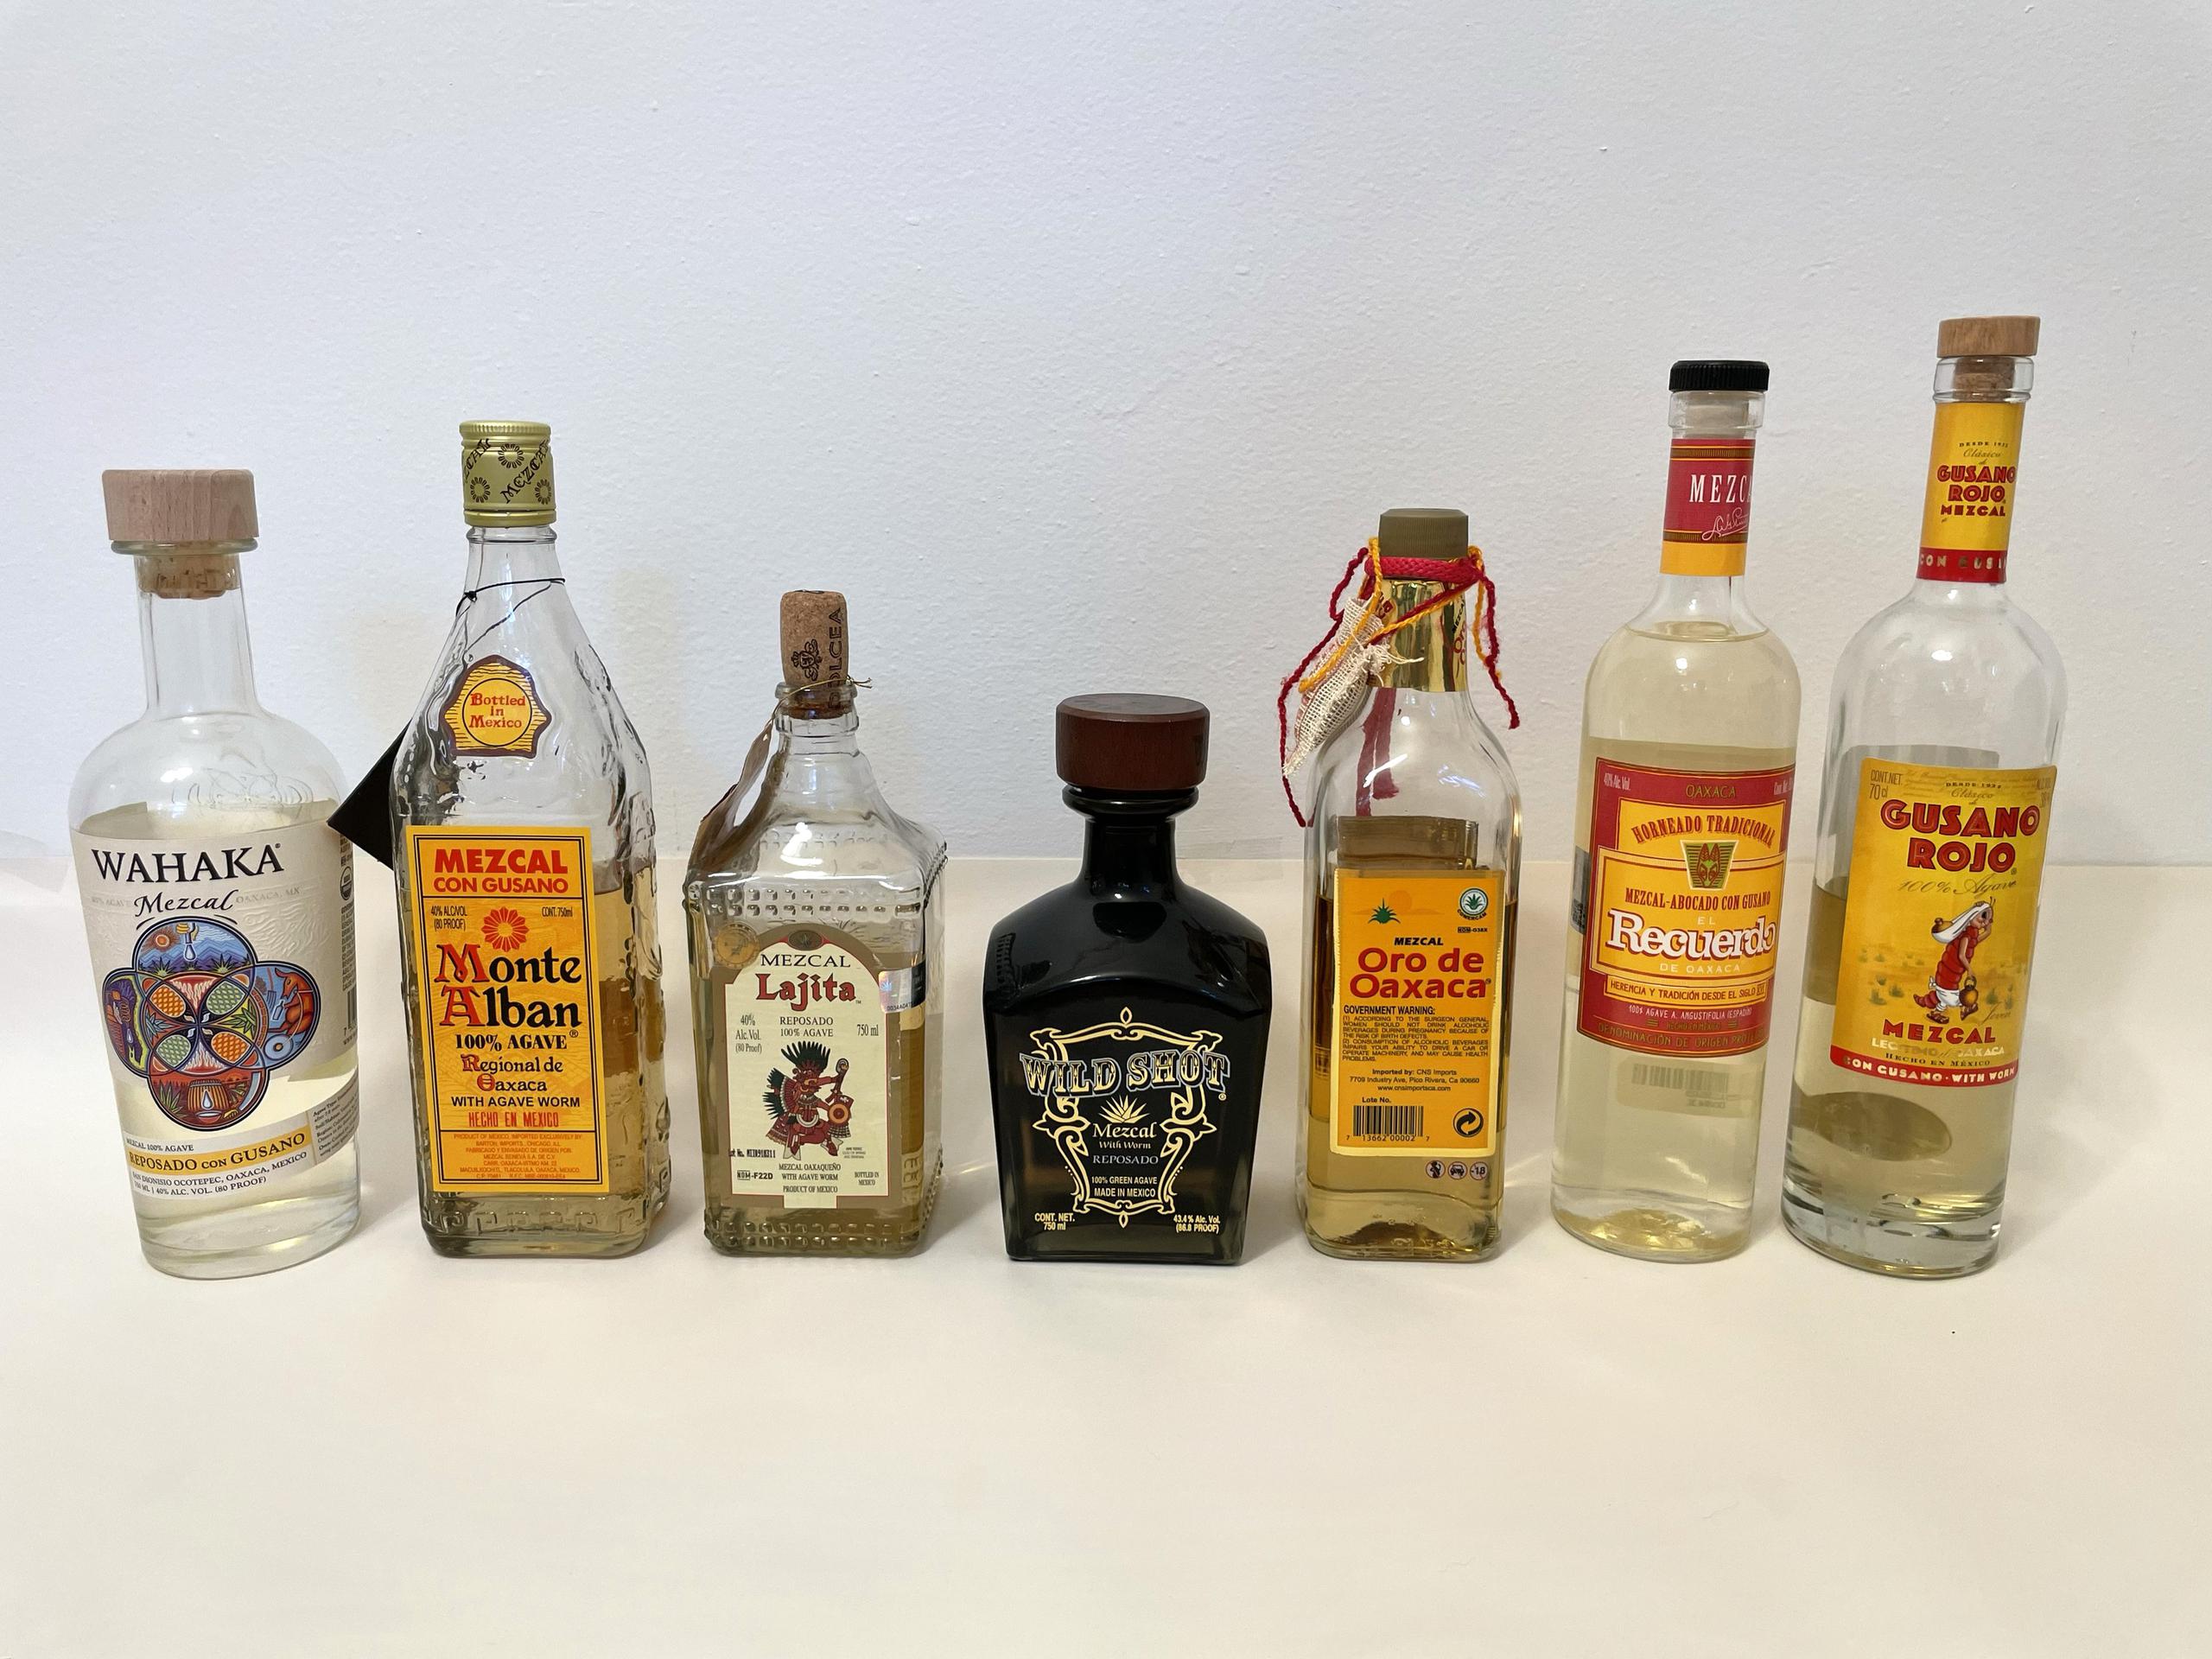 Fotografía cedida por Akito Y. Kawahara donde se muestran botellas de diferentes tipos de mezcal que subieron la prueba para la identidad del "gusanos de mezcal".